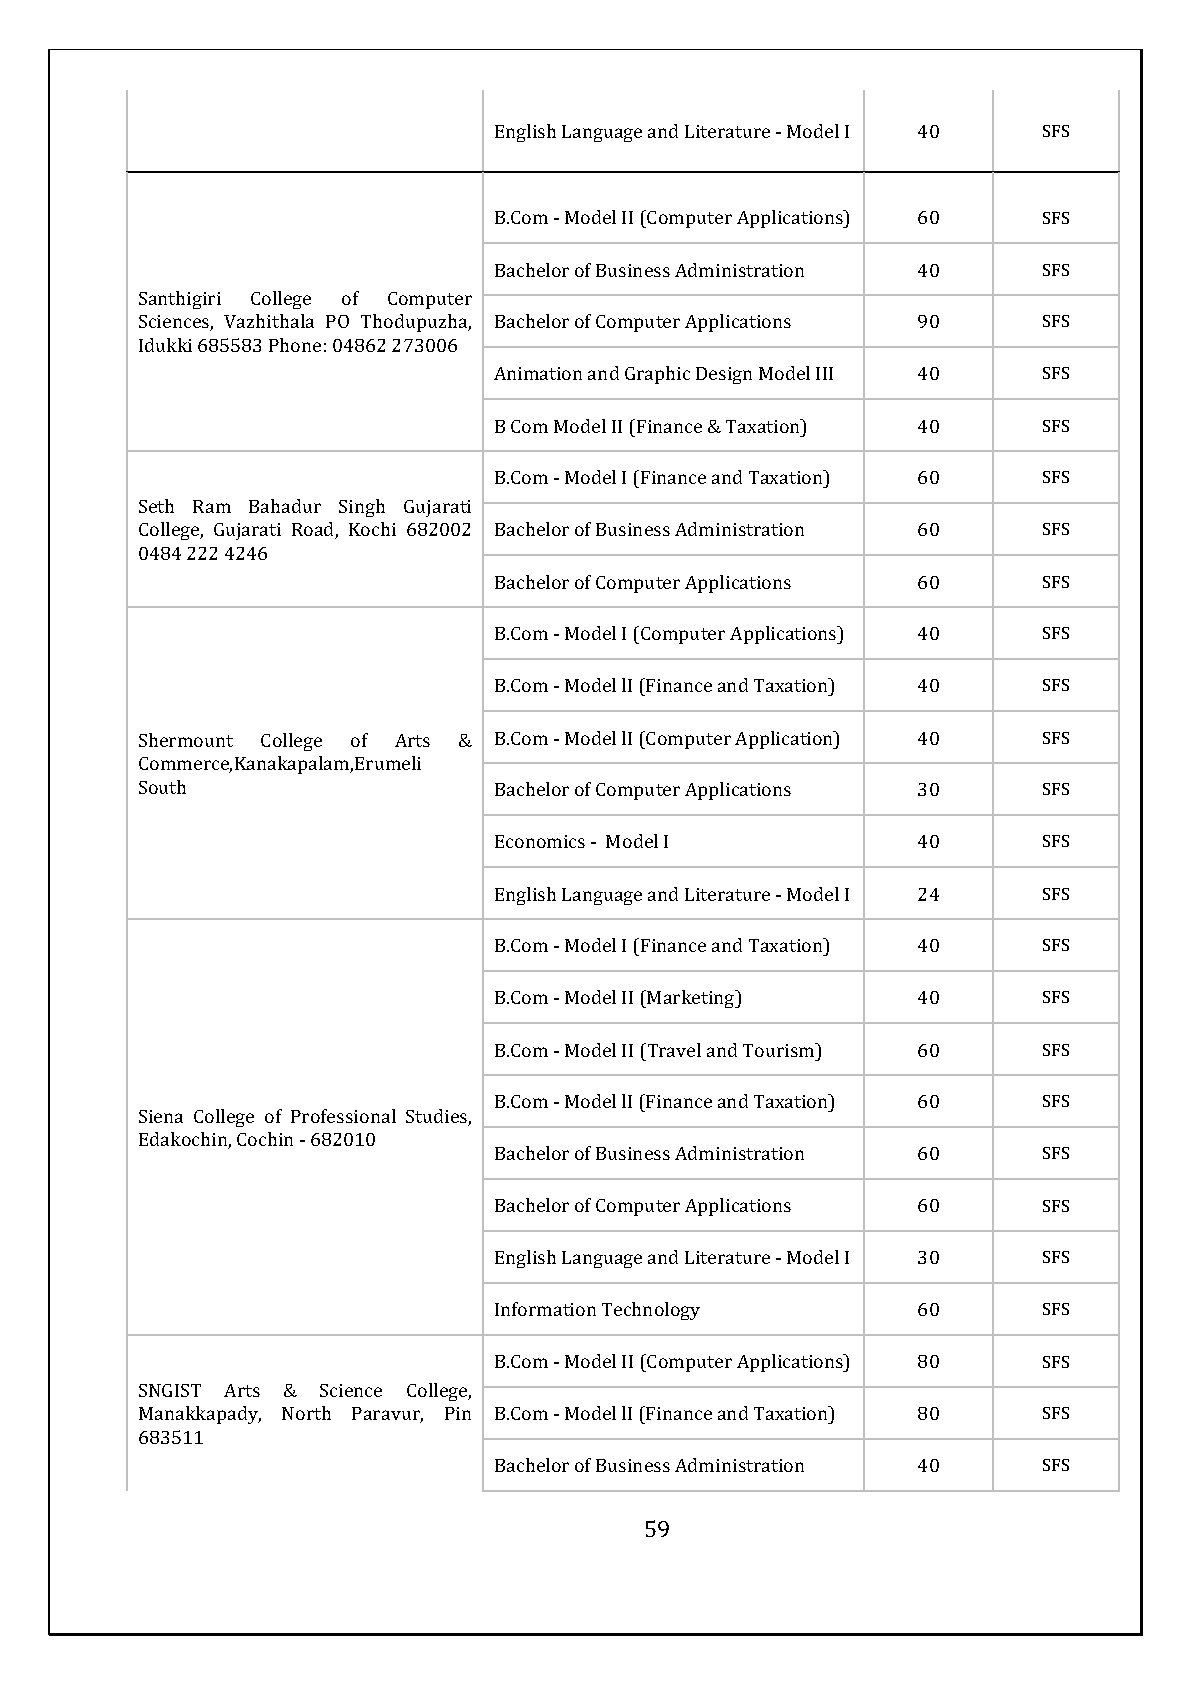 Mahatma Gandhi University Kerala UG Admission 2019 - Notification Image 60